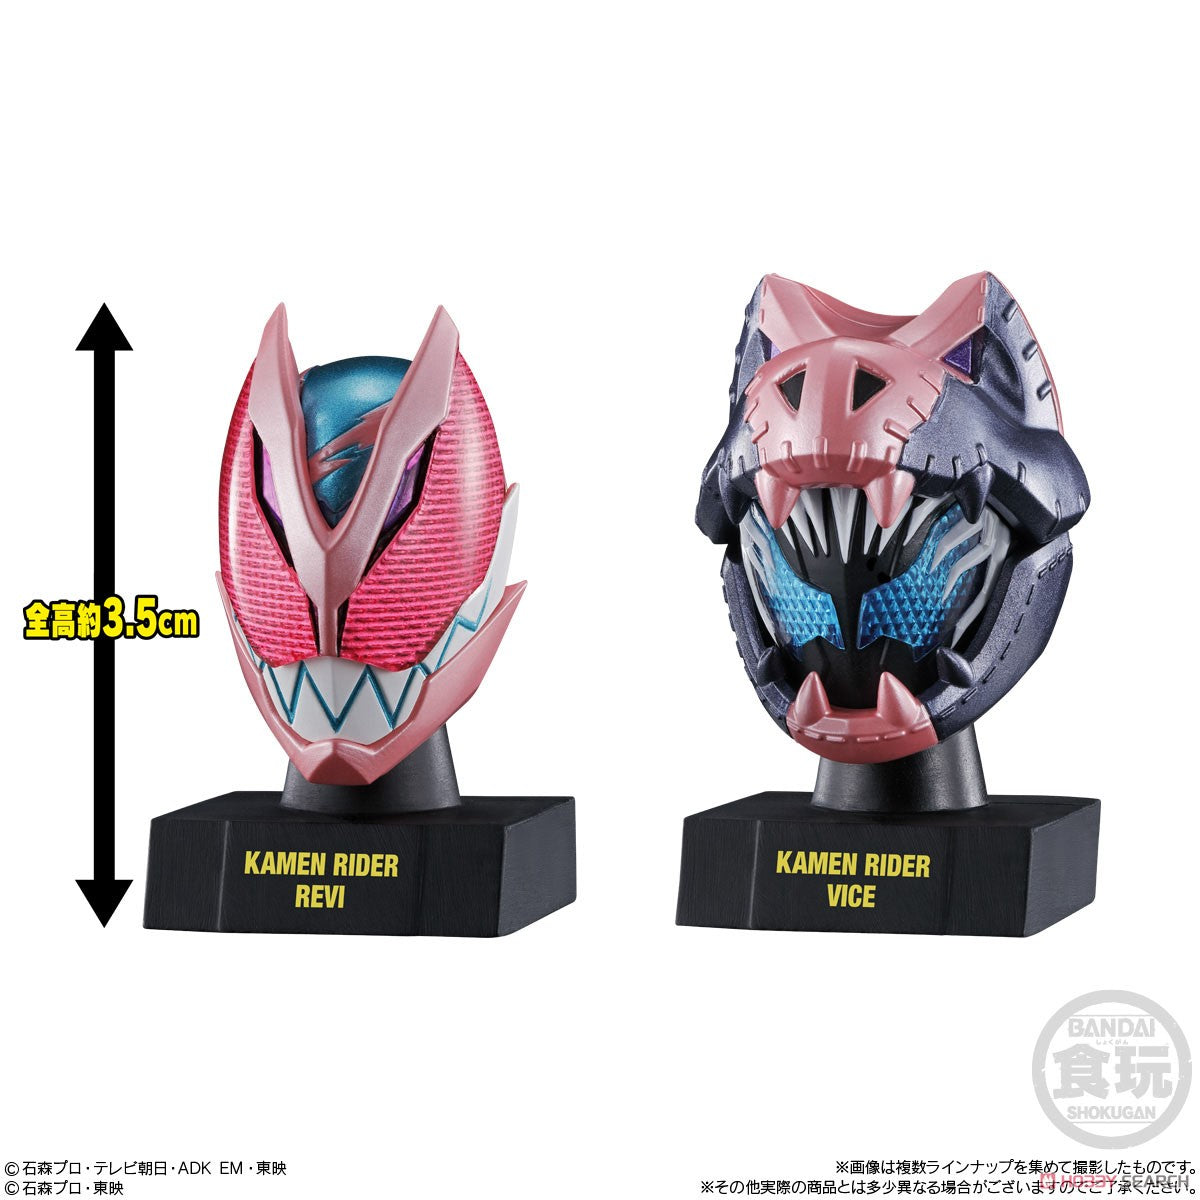 [PREORDER] Bandai Kamen Rider Mask History 1